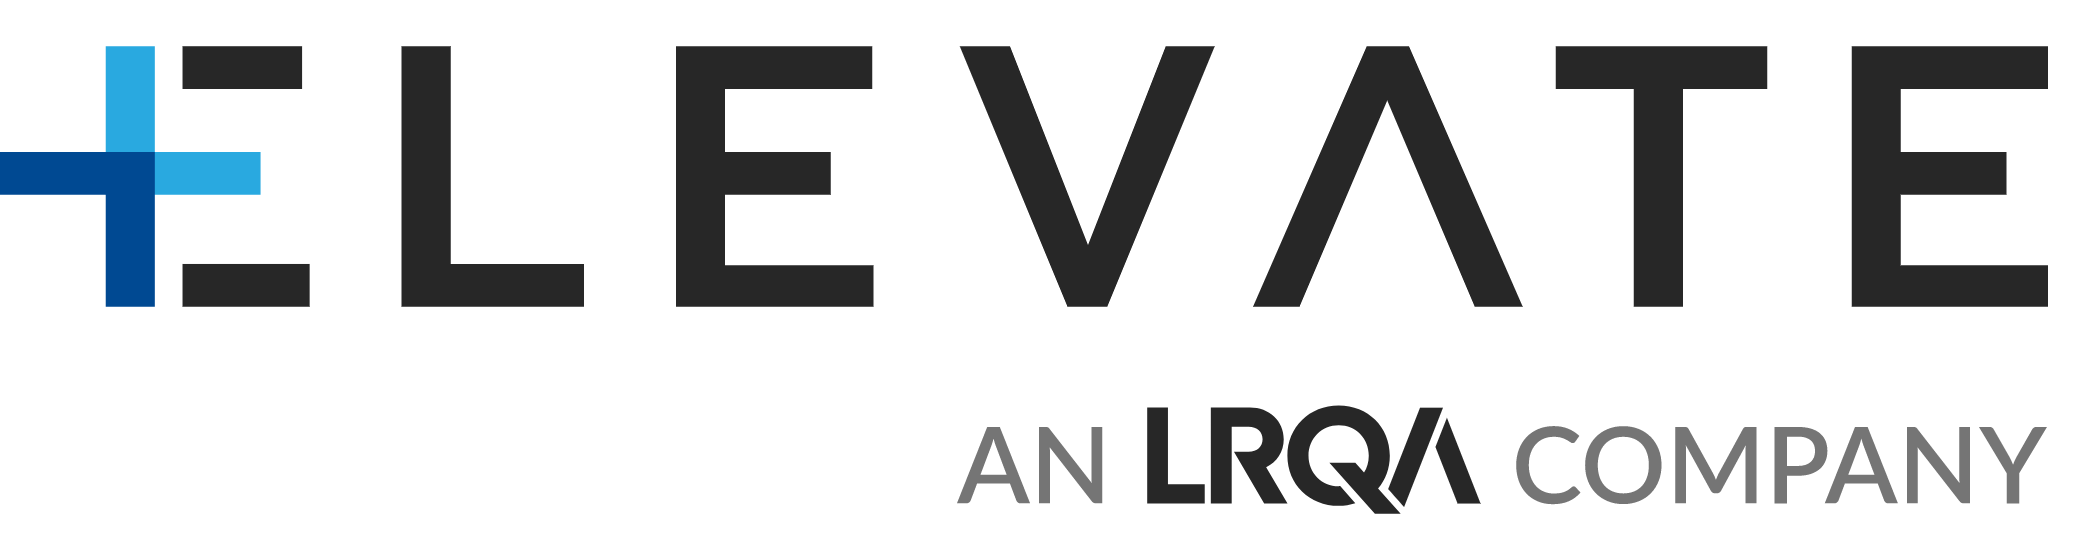 ELEVATE Global (Thailand) Co., Ltd.